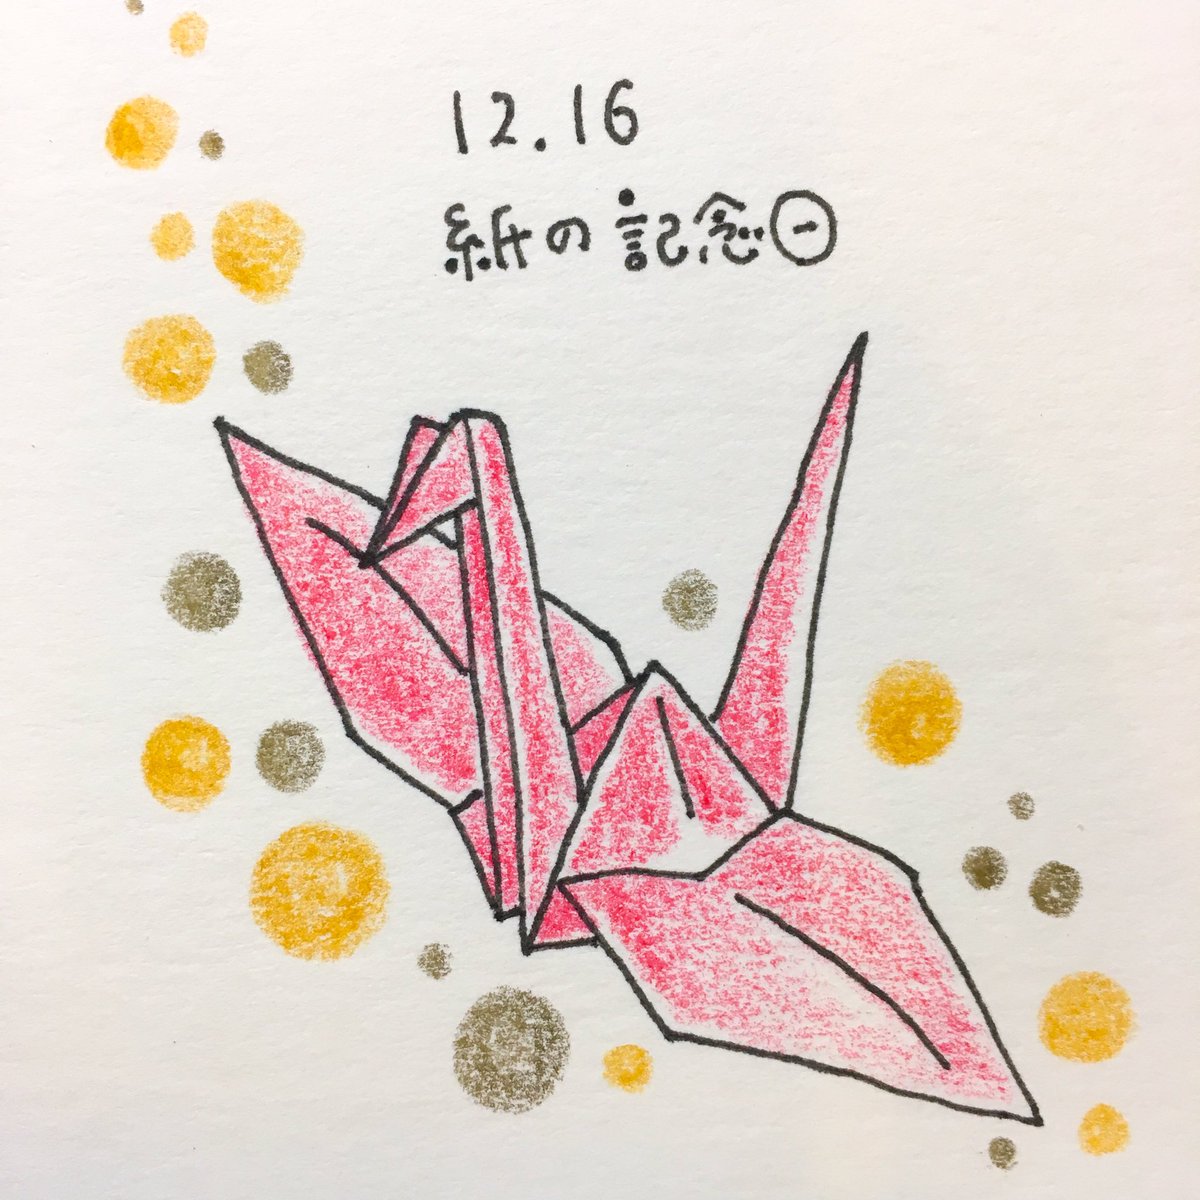 日めくり 手書きイラストレーター 19年12月16日 紙の記念日 紙を思い浮かべたときに 最初に出てきたのがコピー用紙でした 笑 コピー用紙はイラストにしづらかったので 次に思いついた折り紙をイラストに 折り鶴